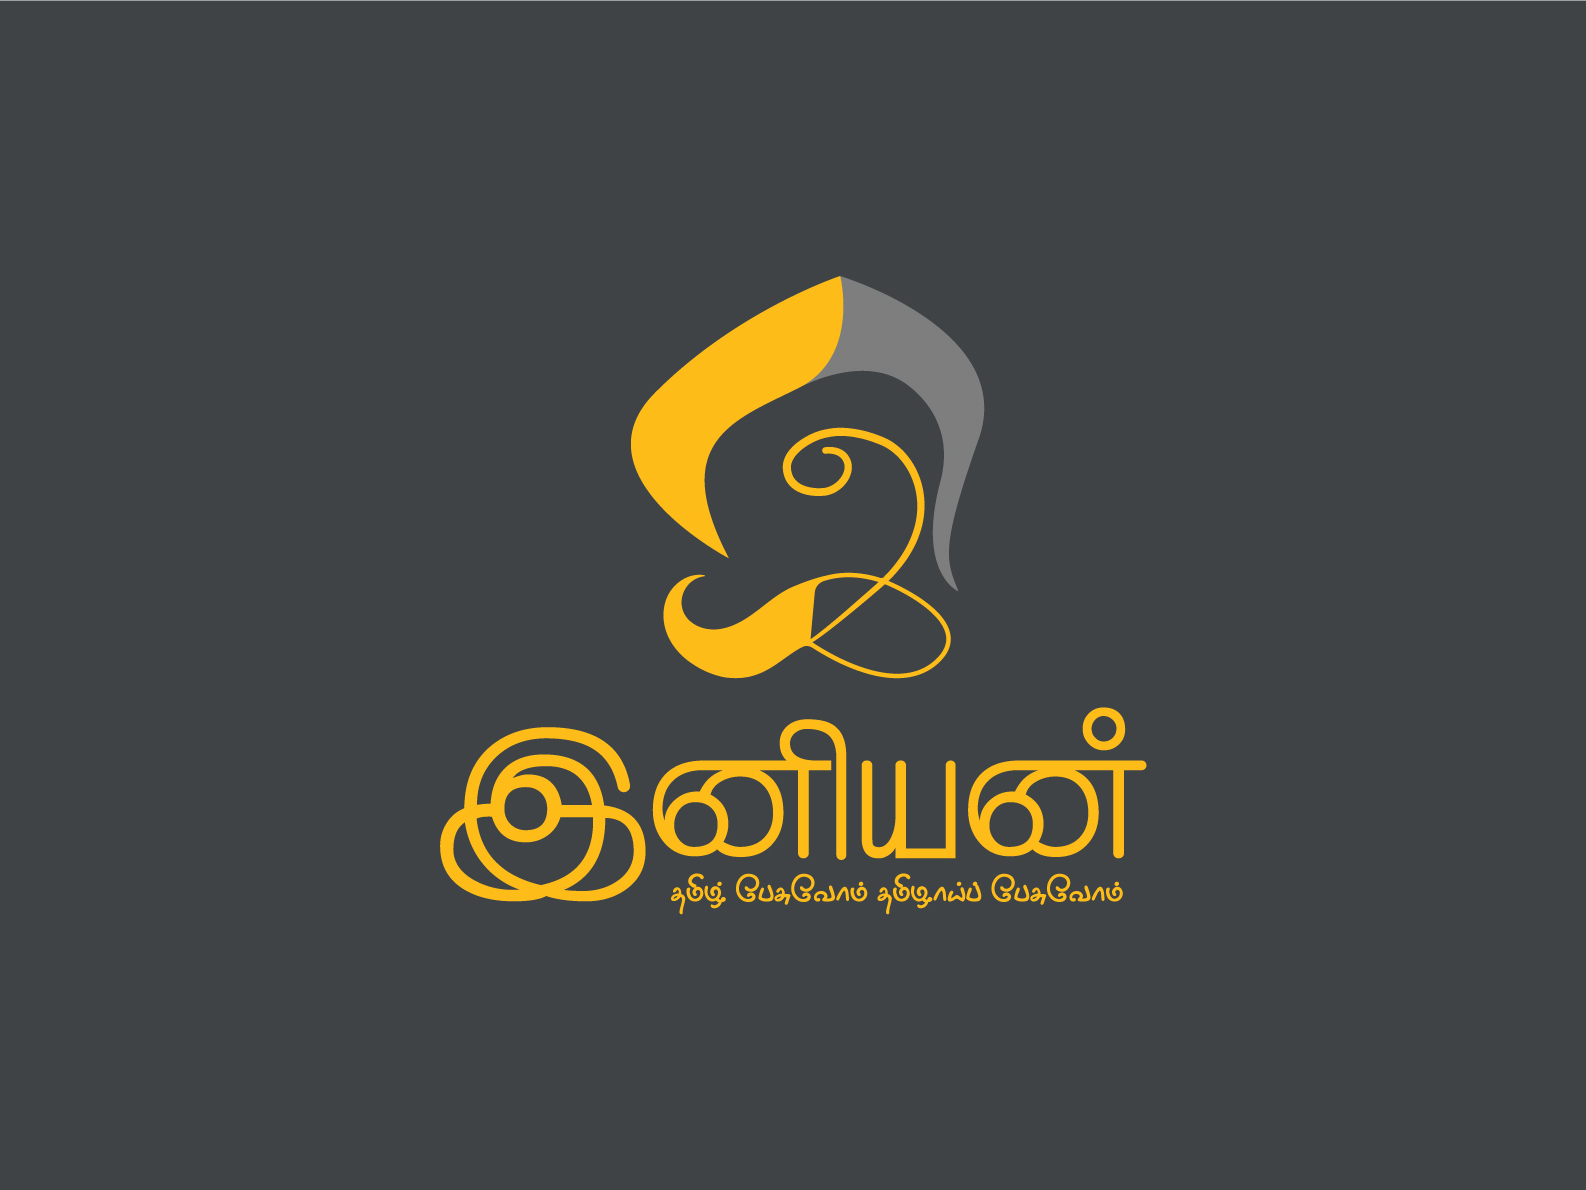 IBC Tamil - logo archive